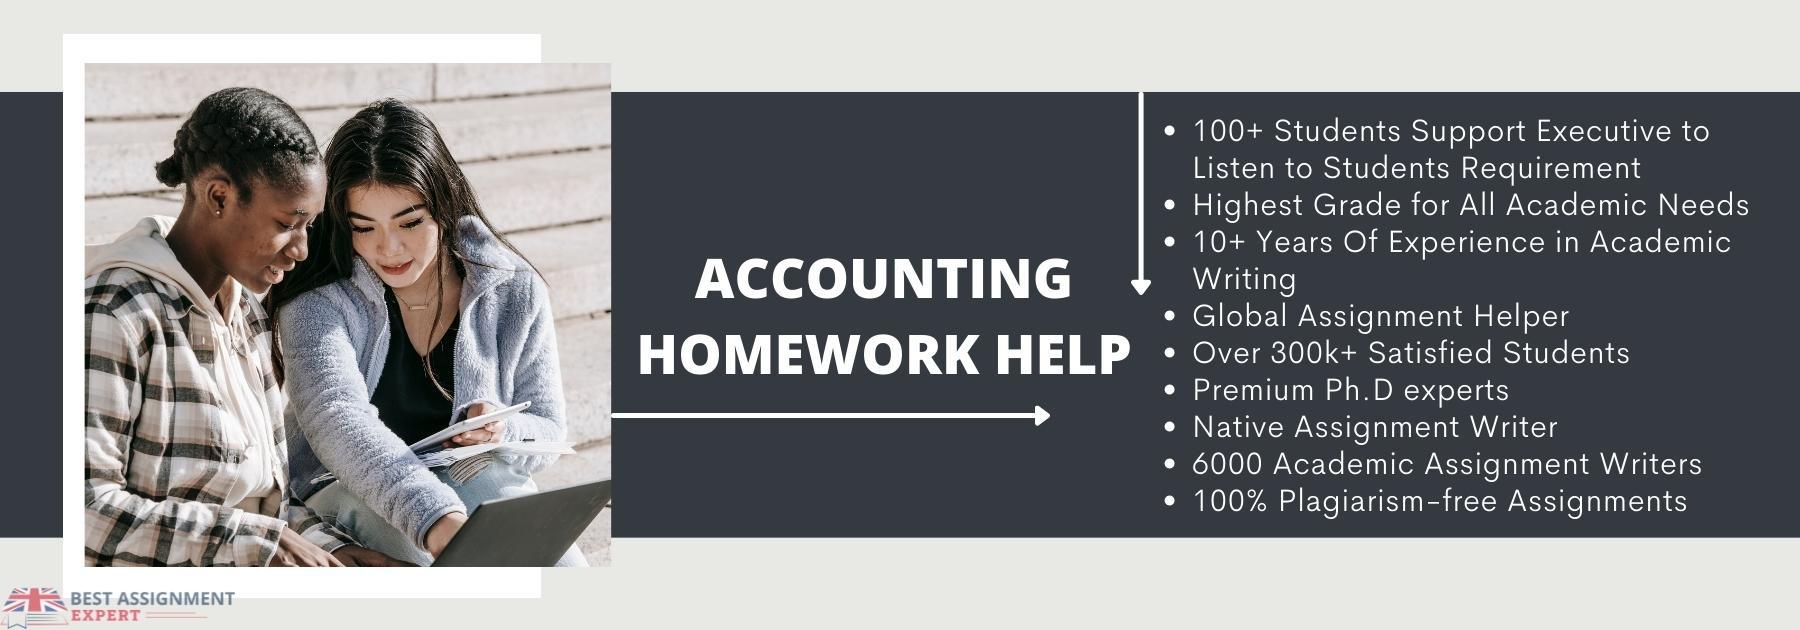 Accounting homework help